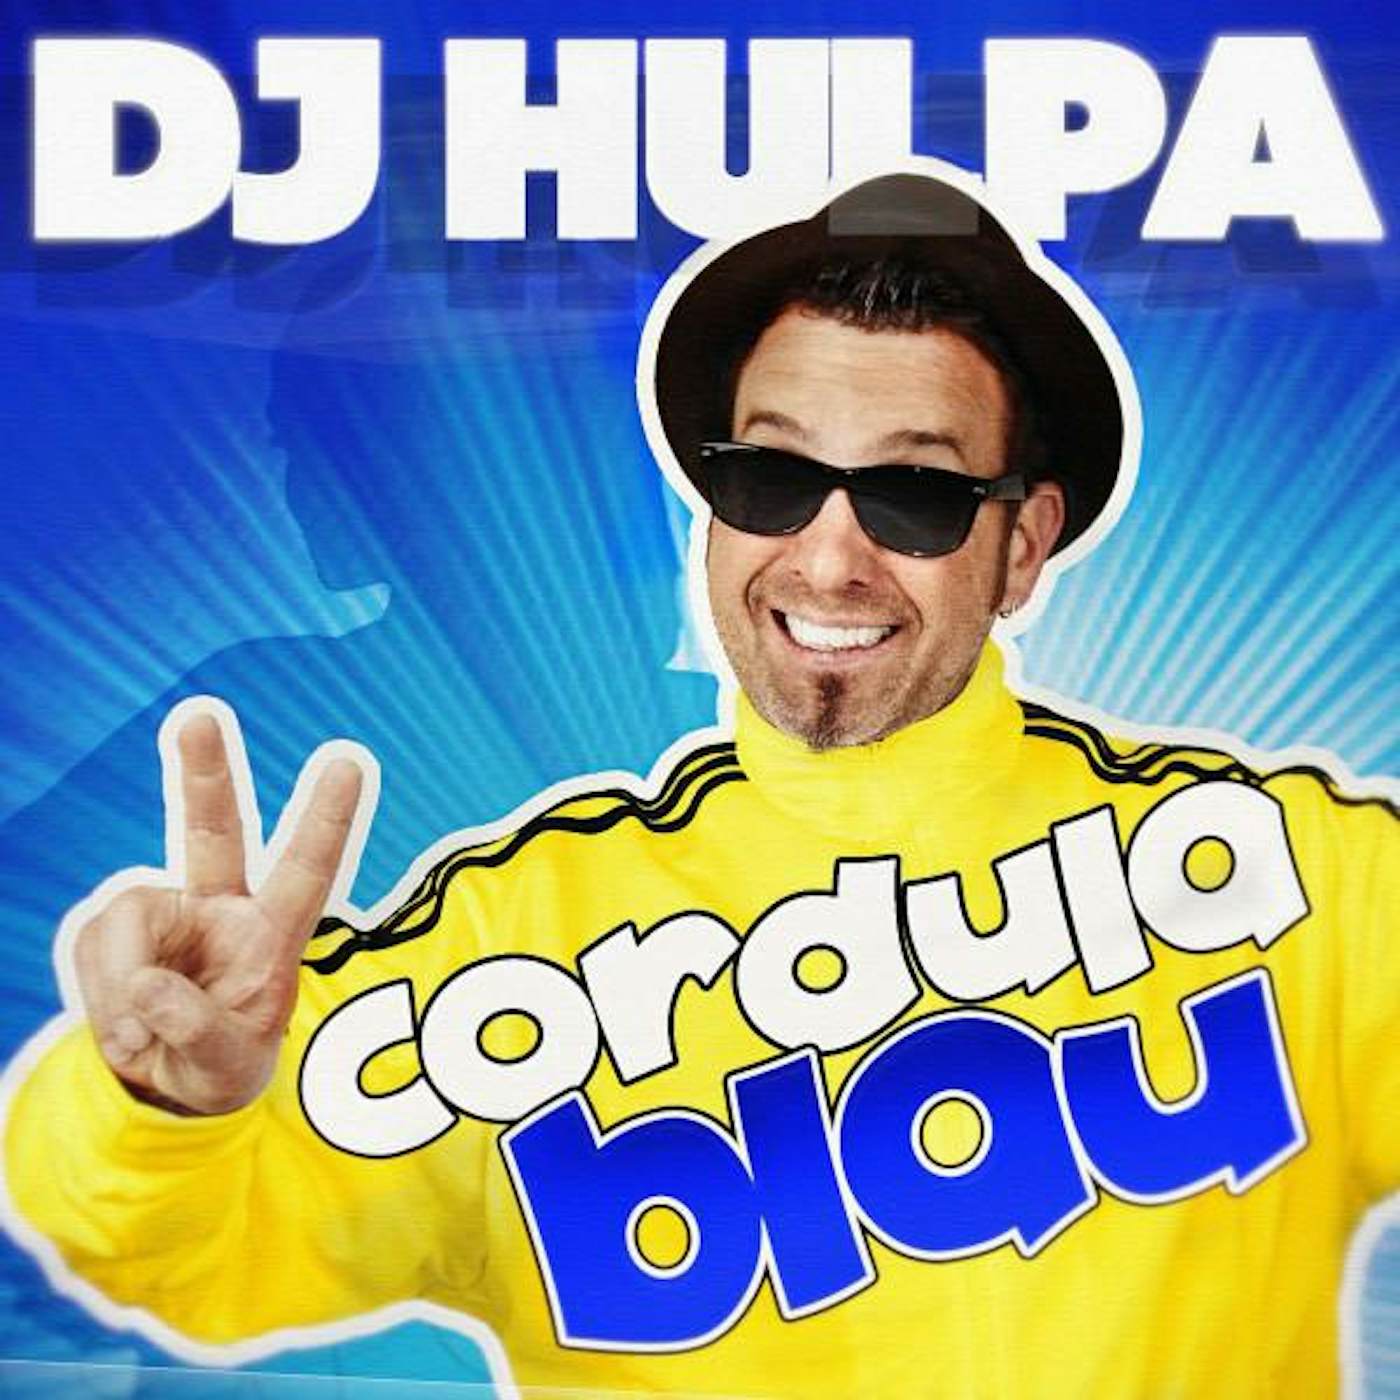 DJ Hulpa